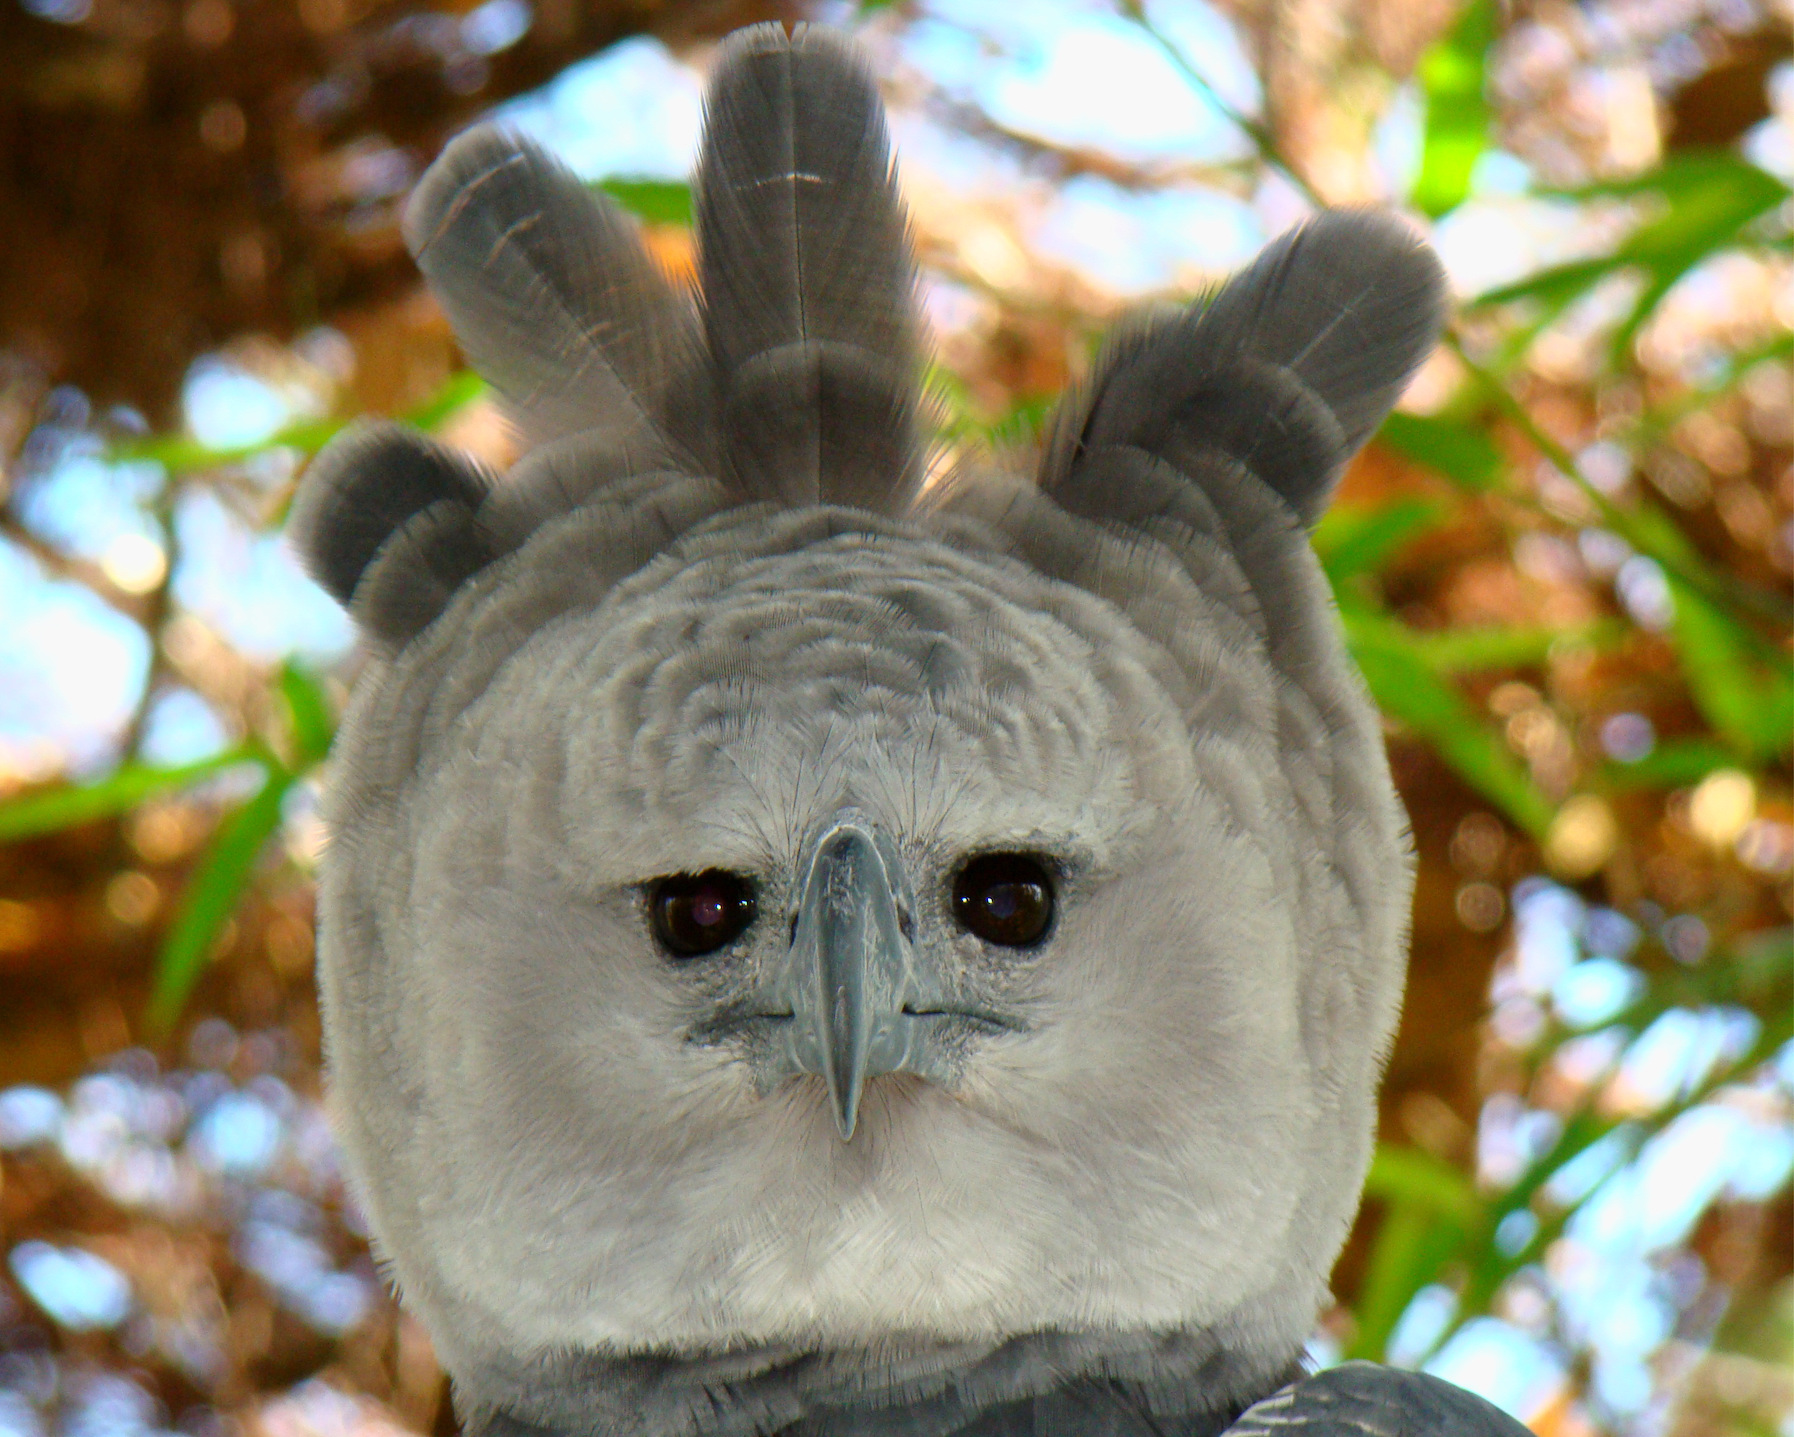 Bosawás alberga al águila harpía (Harpia harpyja), una de las águilas más grandes del mundo. La especie está casi extinta en América Central. Fotografía de Bjørn Christian Tørrissen mediante Wikimedia Commons (CC BY-SA 3.0).